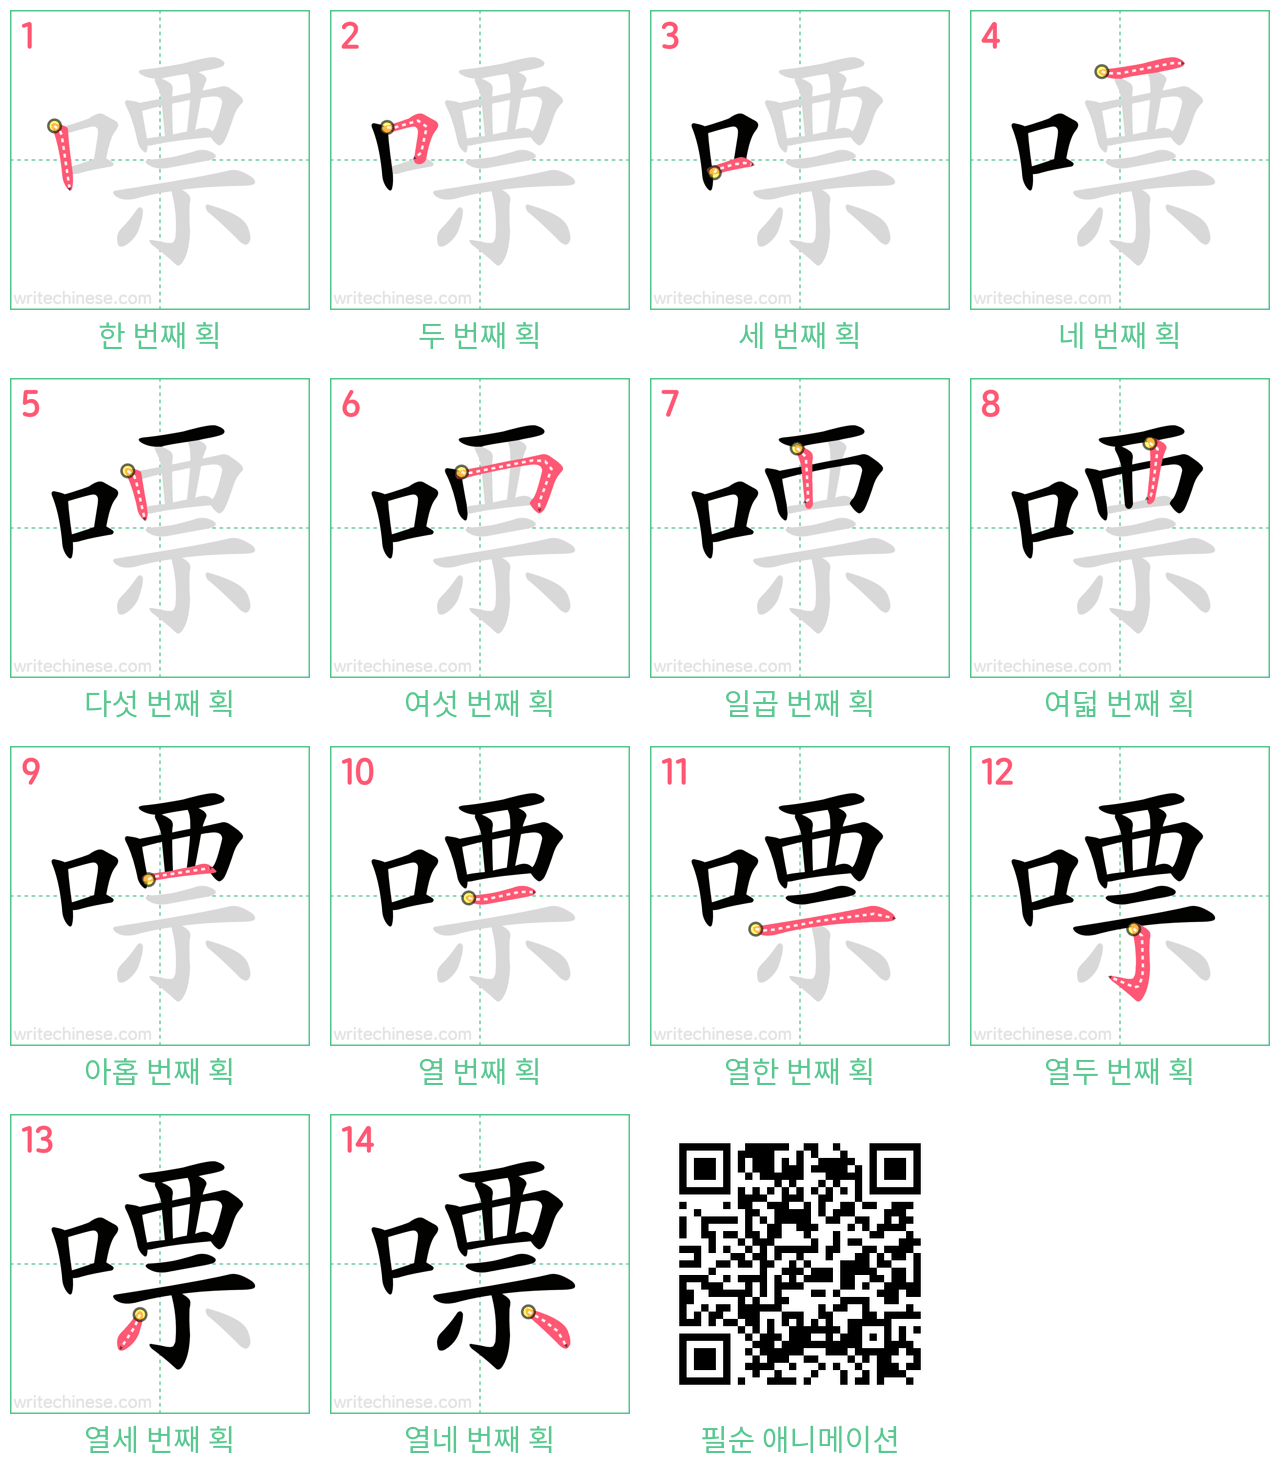 嘌 step-by-step stroke order diagrams